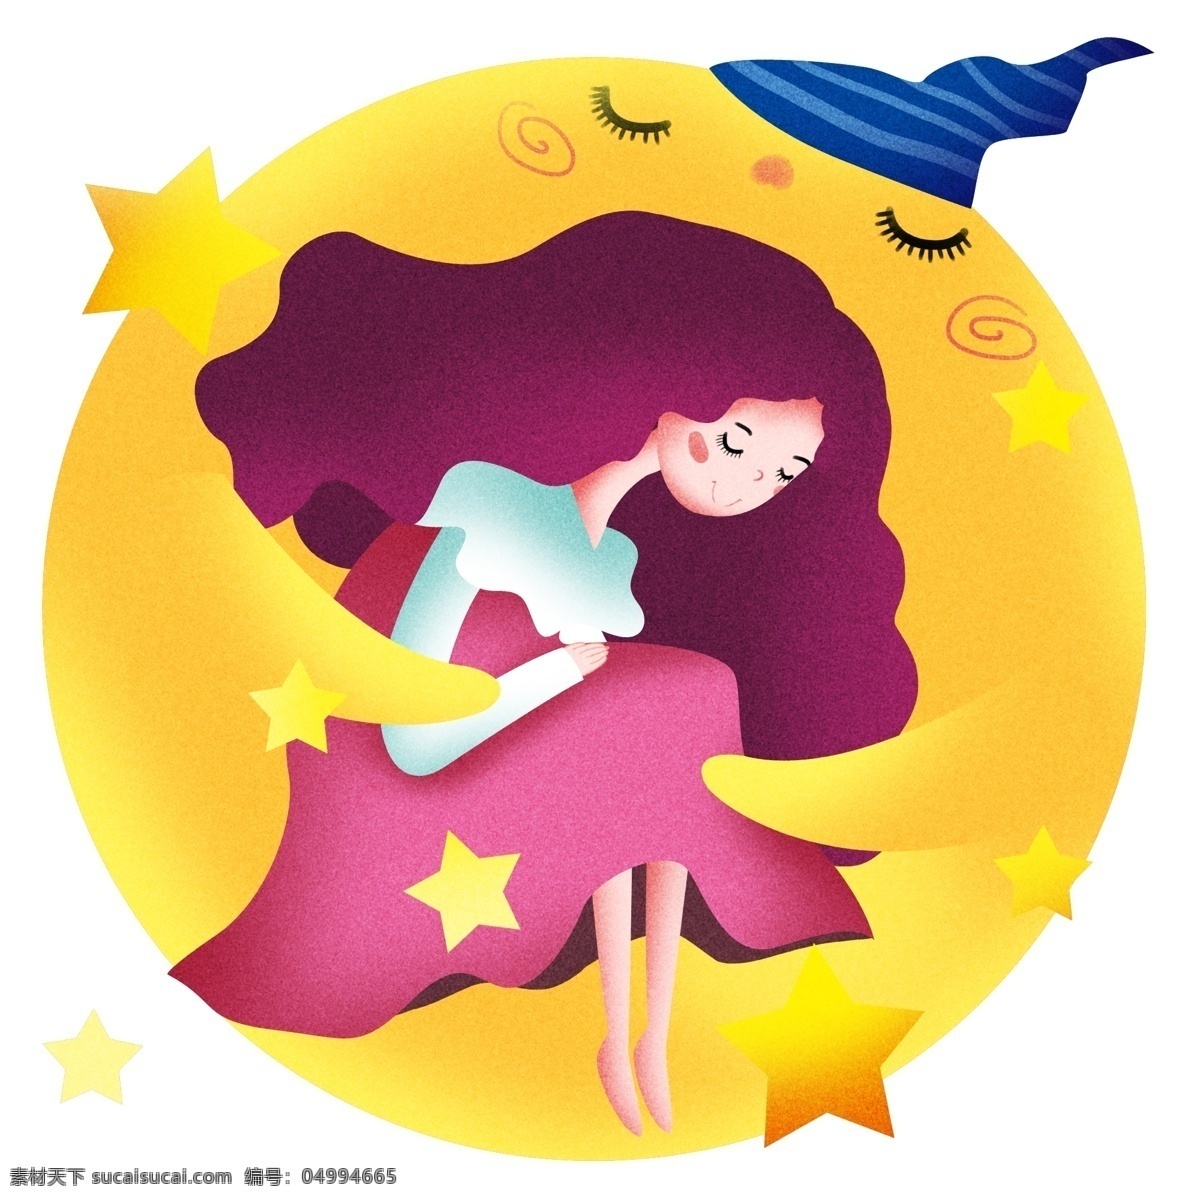 黄色 星球 睡觉 女孩 插画 黄色的星星 星星装饰 睡觉的女孩 蓝色条纹睡帽 世界睡眠日 节日 卡通插画